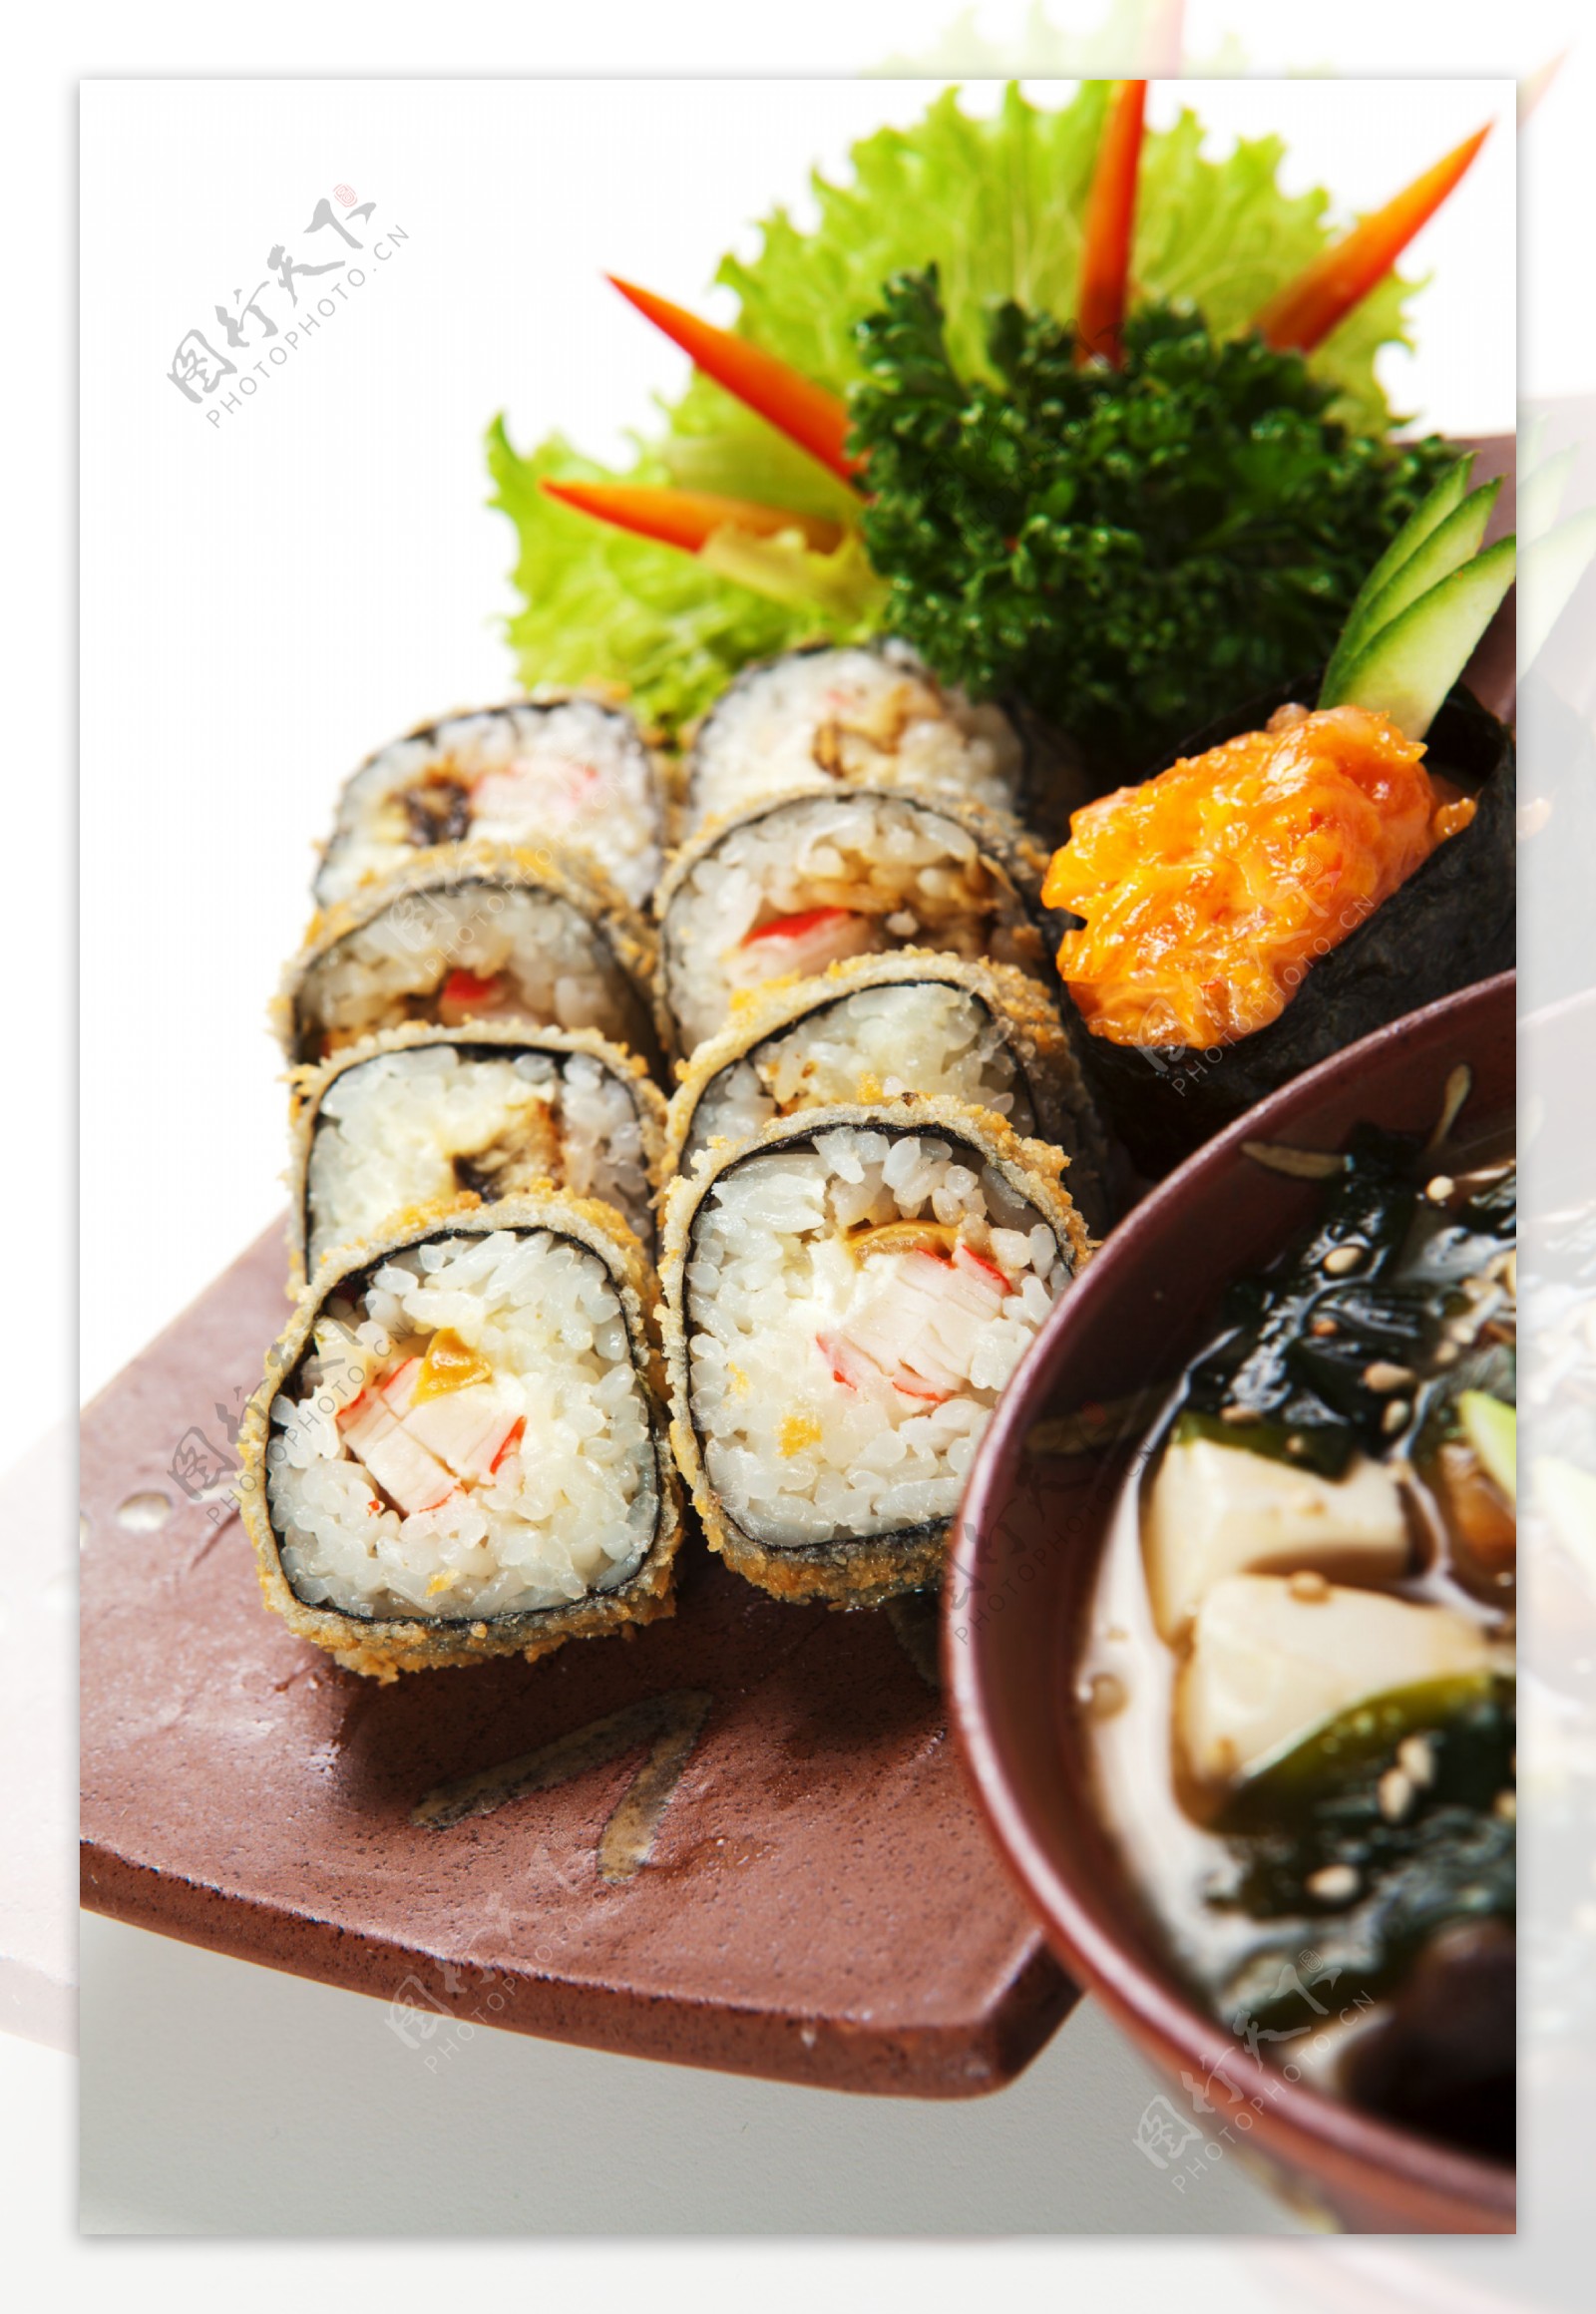 美味寿司图片